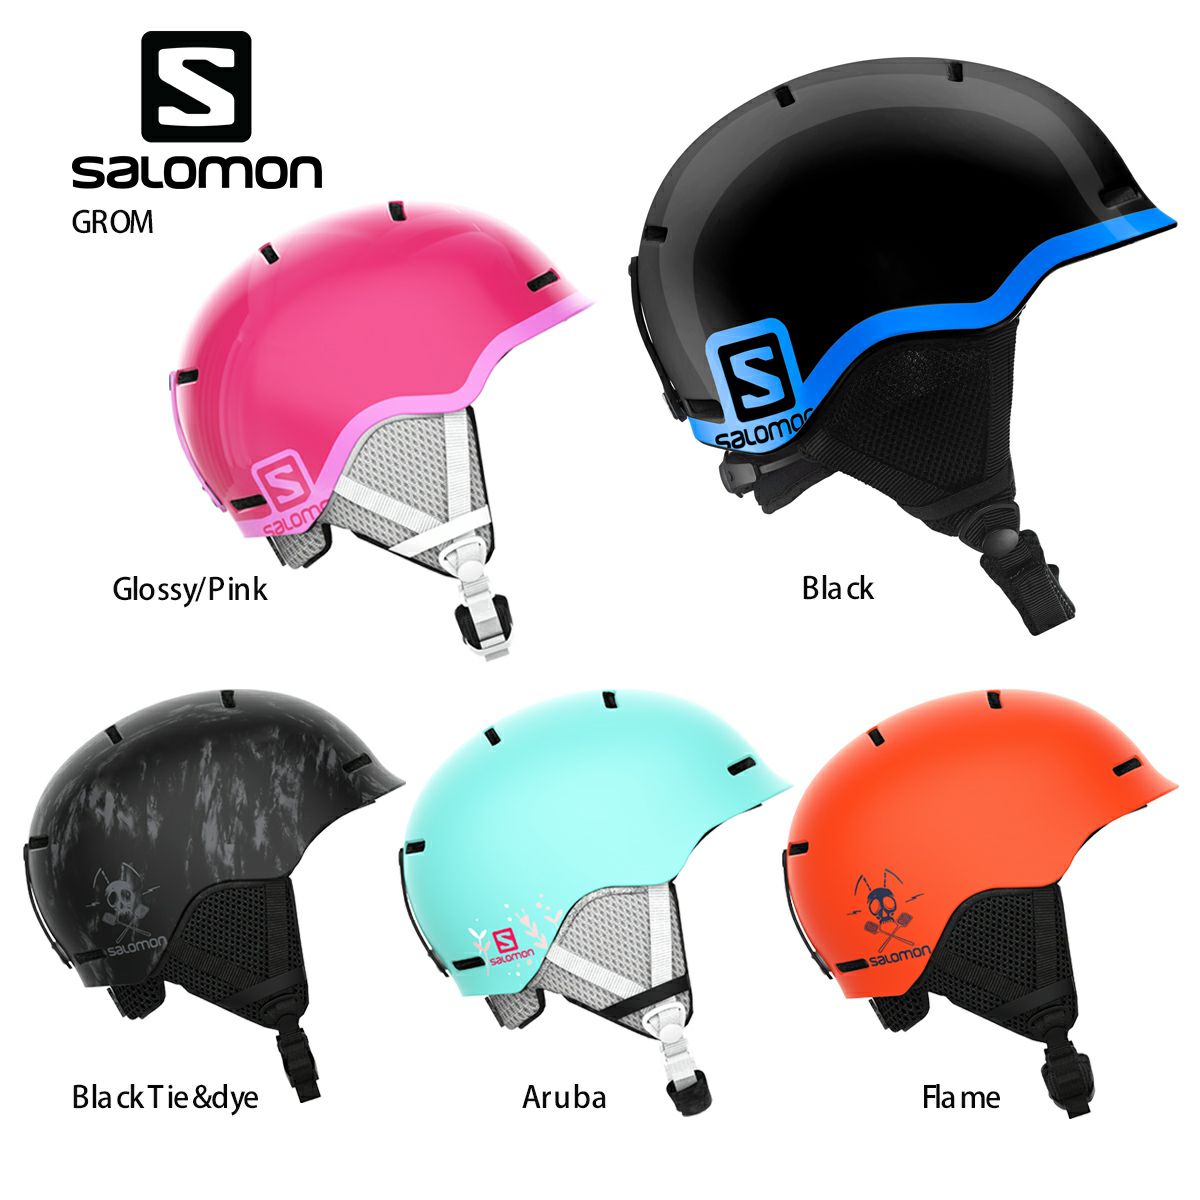 ジュニア スキー スノボー用ヘルメット サロモンの人気商品・通販 